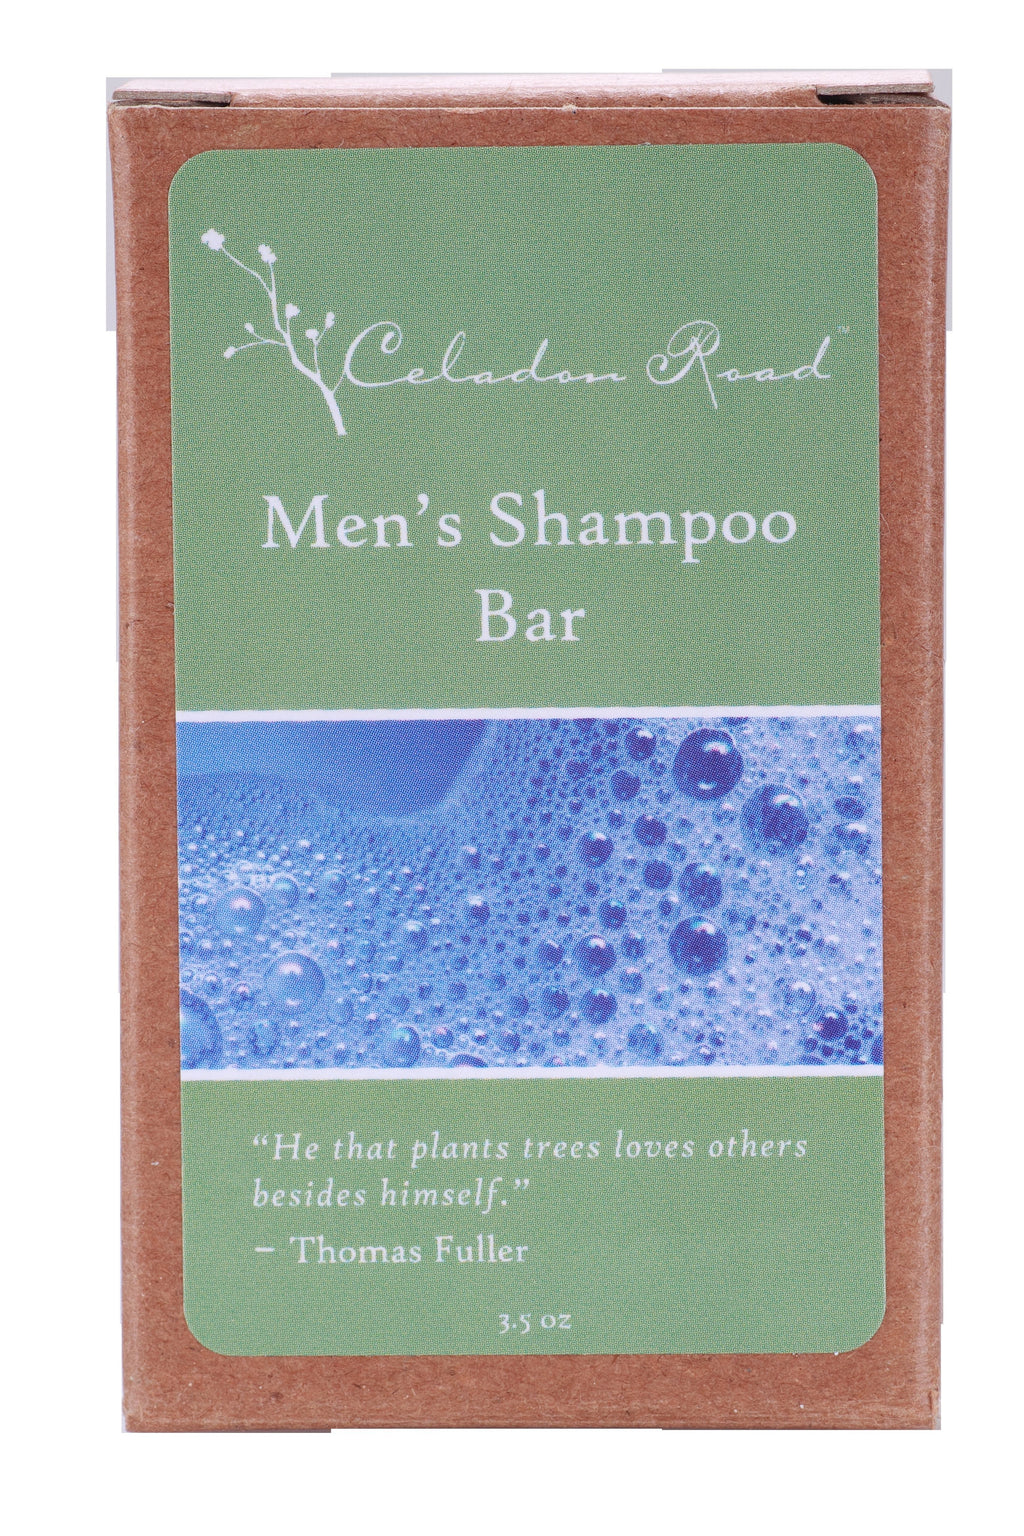 Men’s Shampoo Bar Soap- Celadon Road- www.celadonroad.com